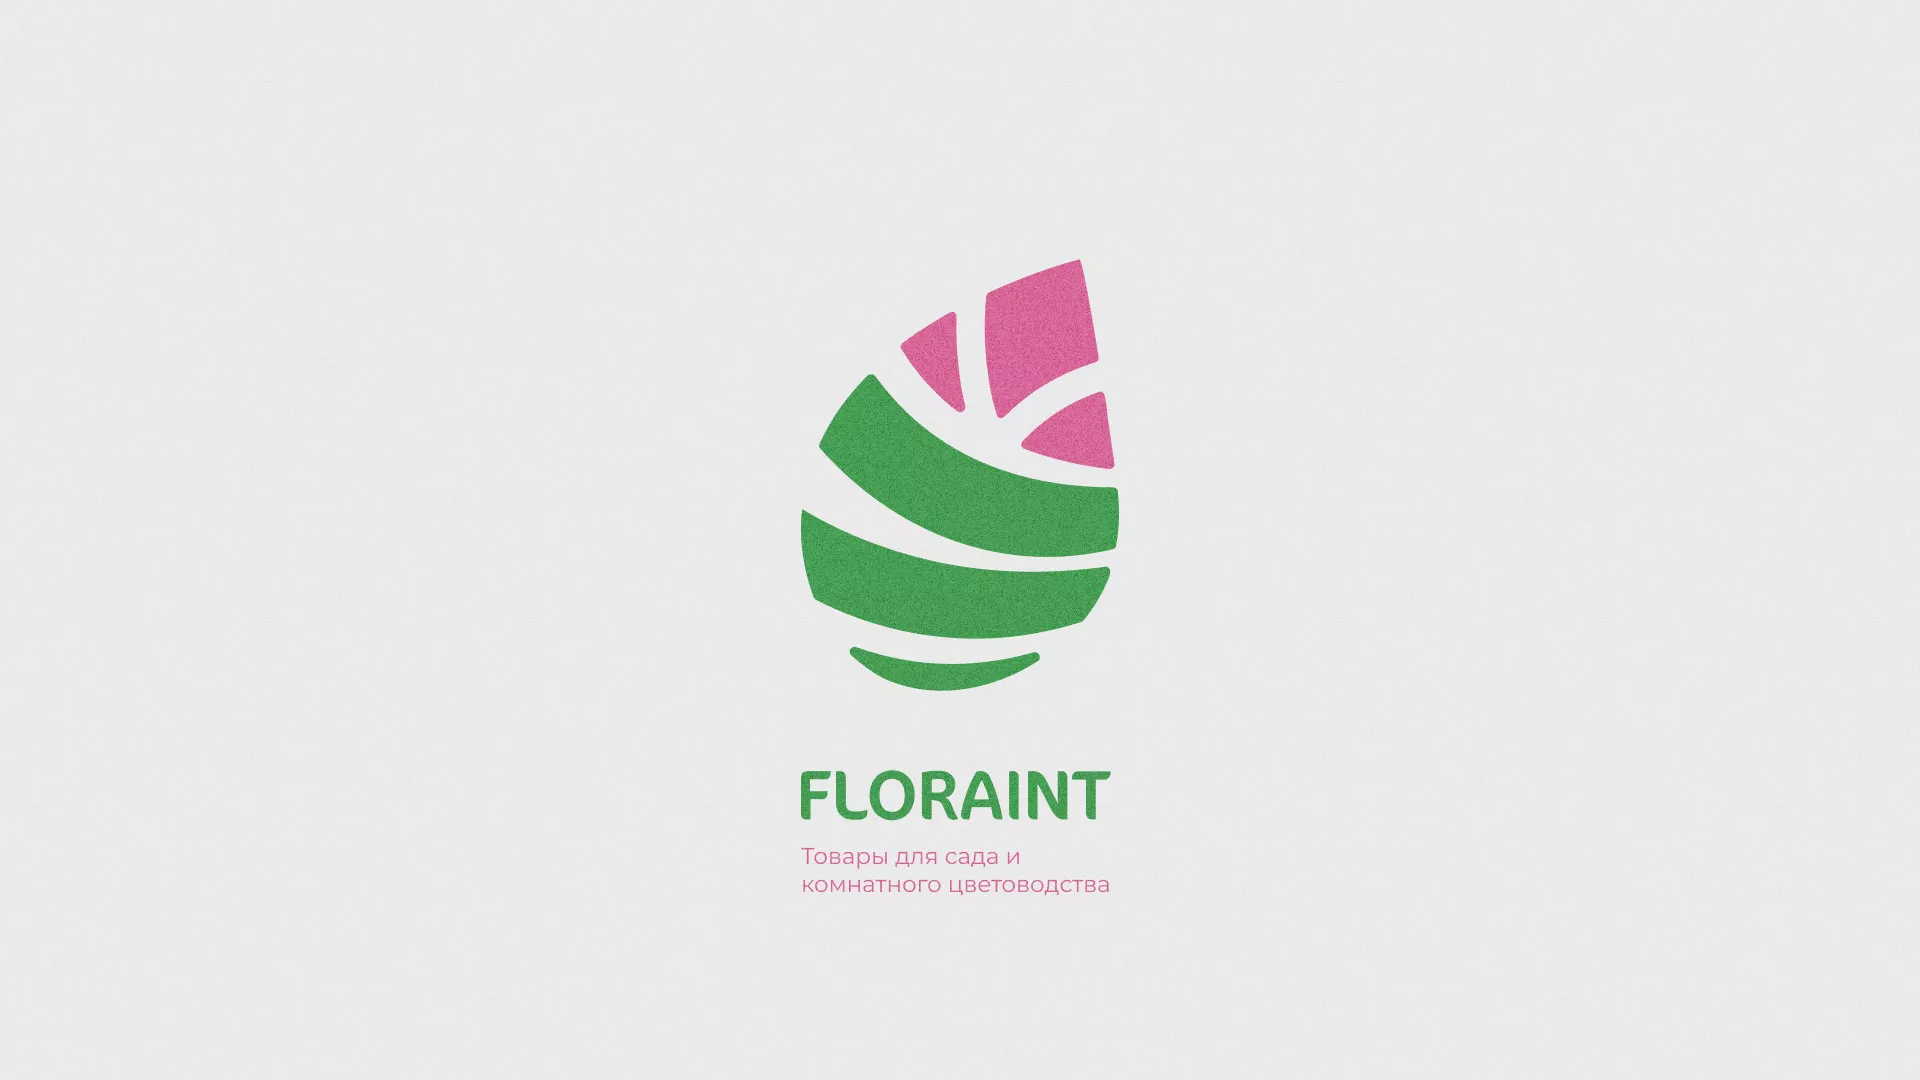 Разработка оформления профиля Instagram для магазина «Floraint» в Вуктыле